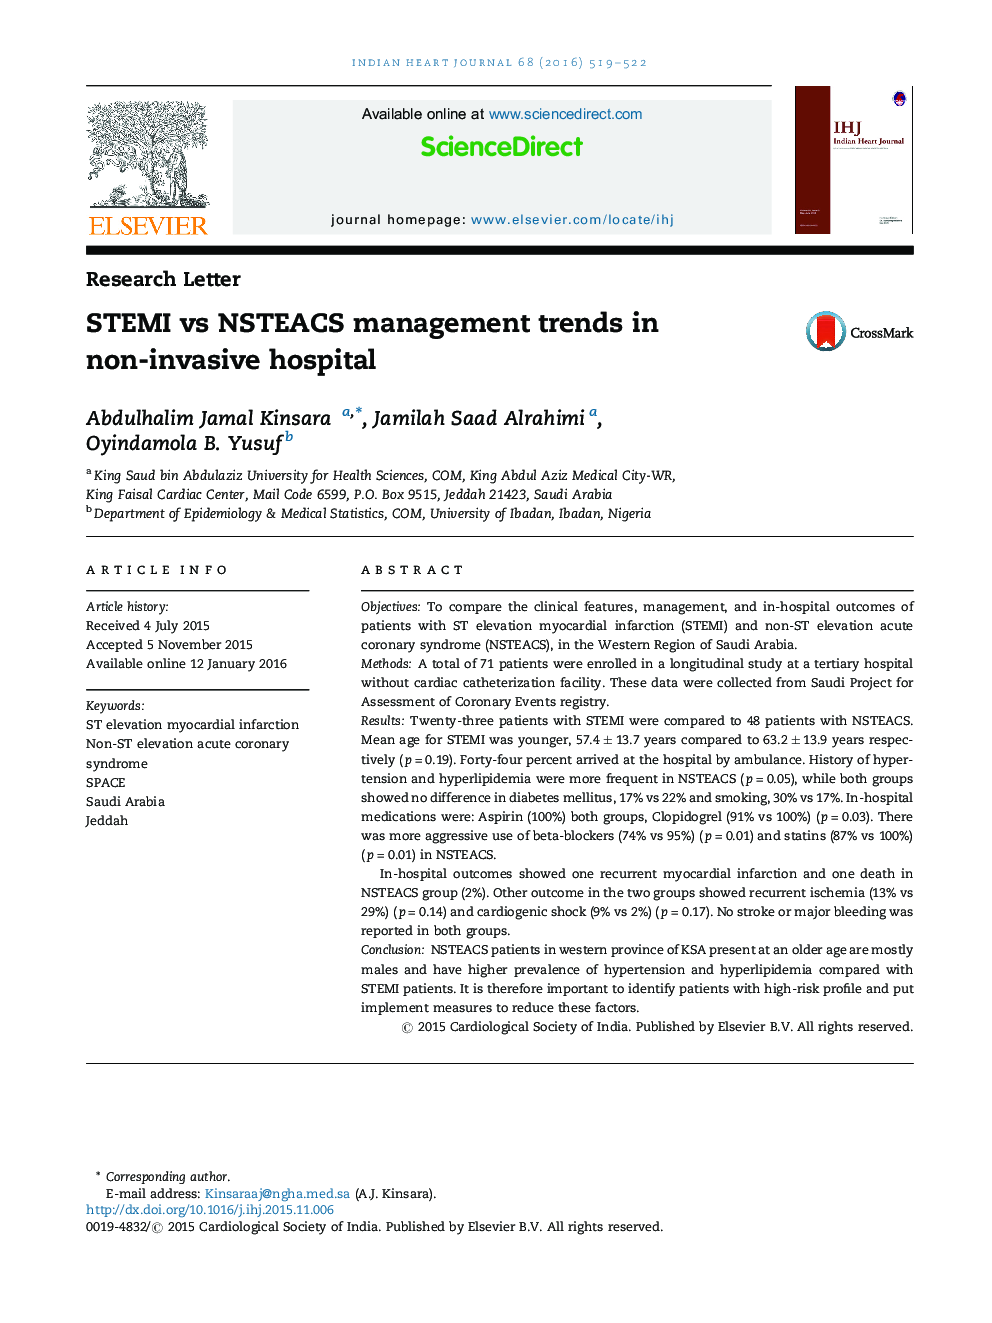 روند مدیریت STEMI در مقابل روند مدیریت NSTEACS در بیمارستان غیرتهاجمی